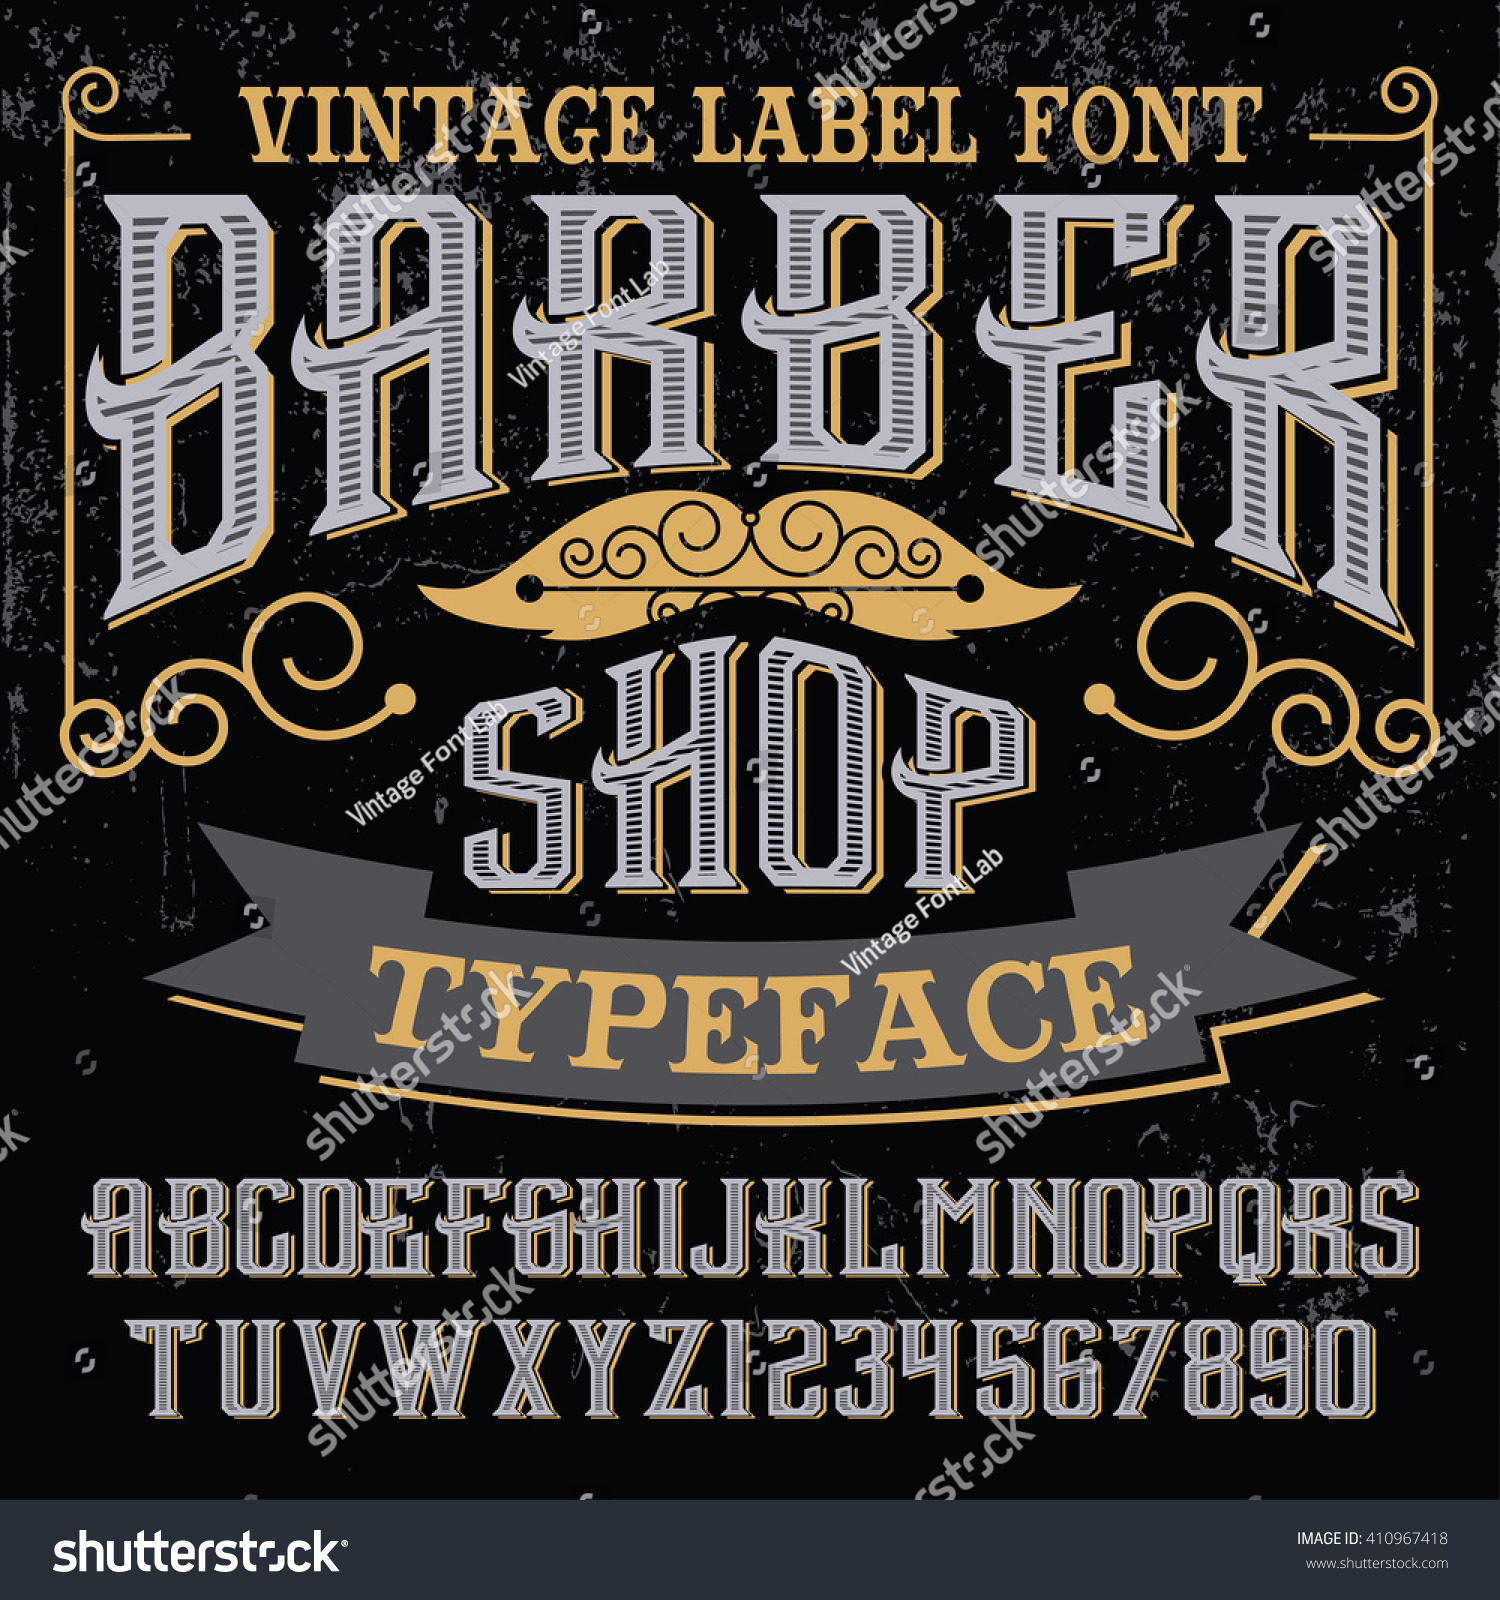 Download Vintage Label Font - Barber Shop - Vector Font, Vintage Label Font - 410967418 : Shutterstock